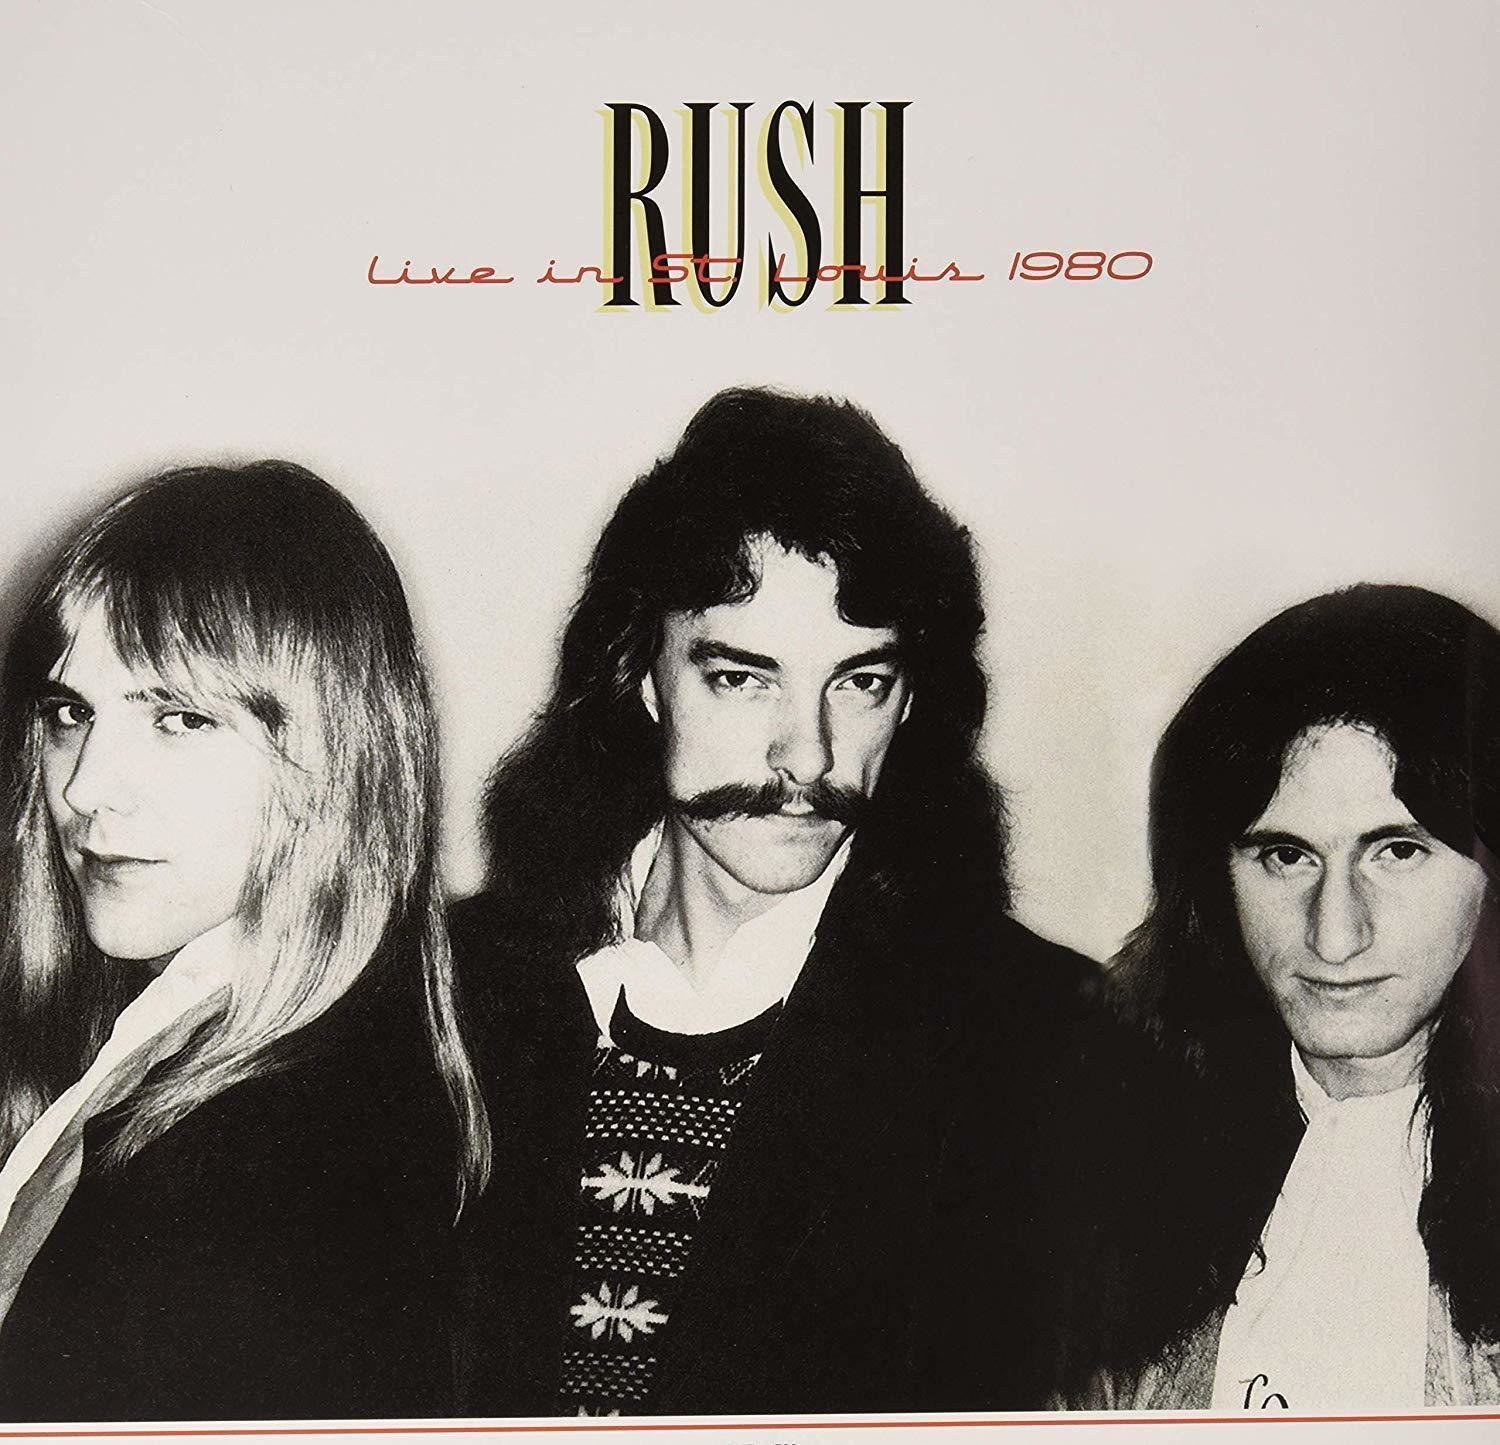 Disco de vinilo Rush - Live In St. Louis 1980 (2 LP)